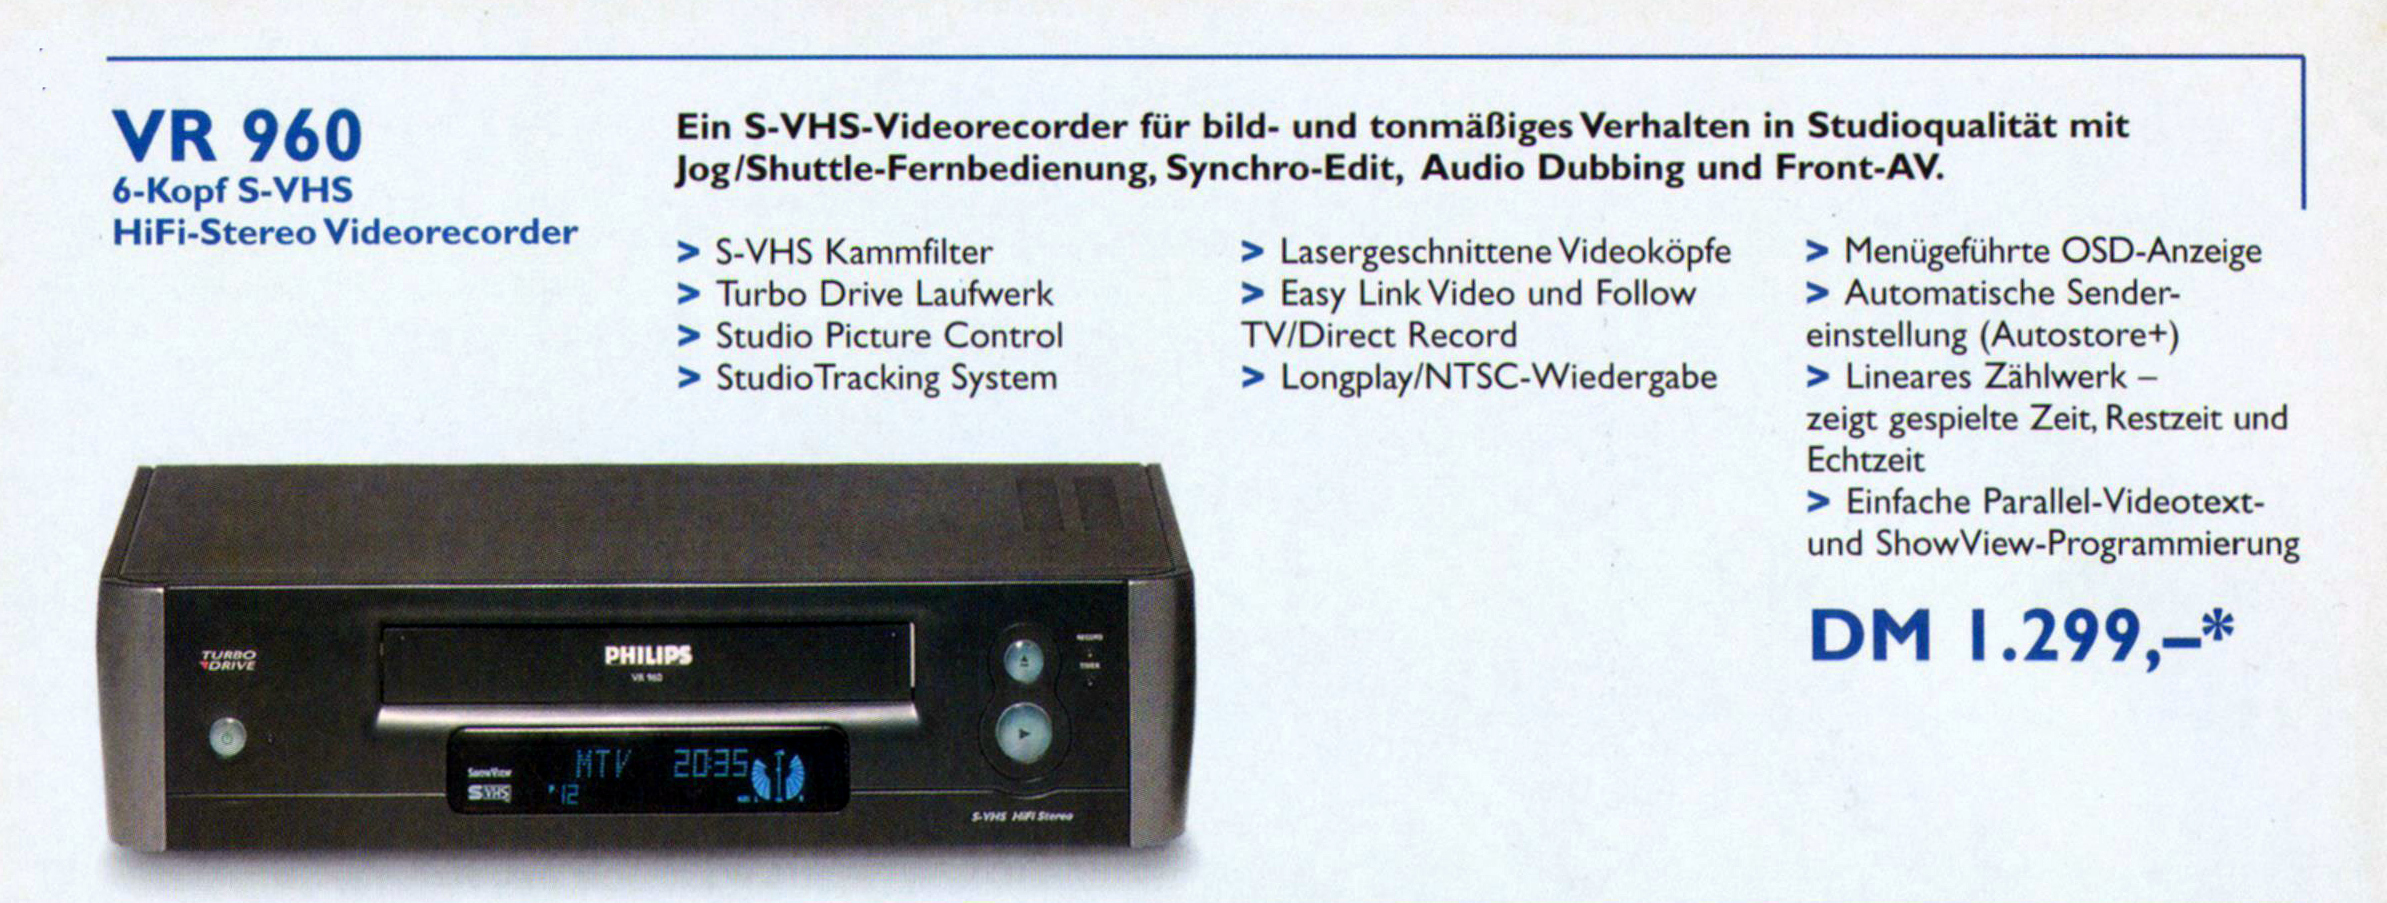 Philips VR-960-Prospekt-1998.jpg